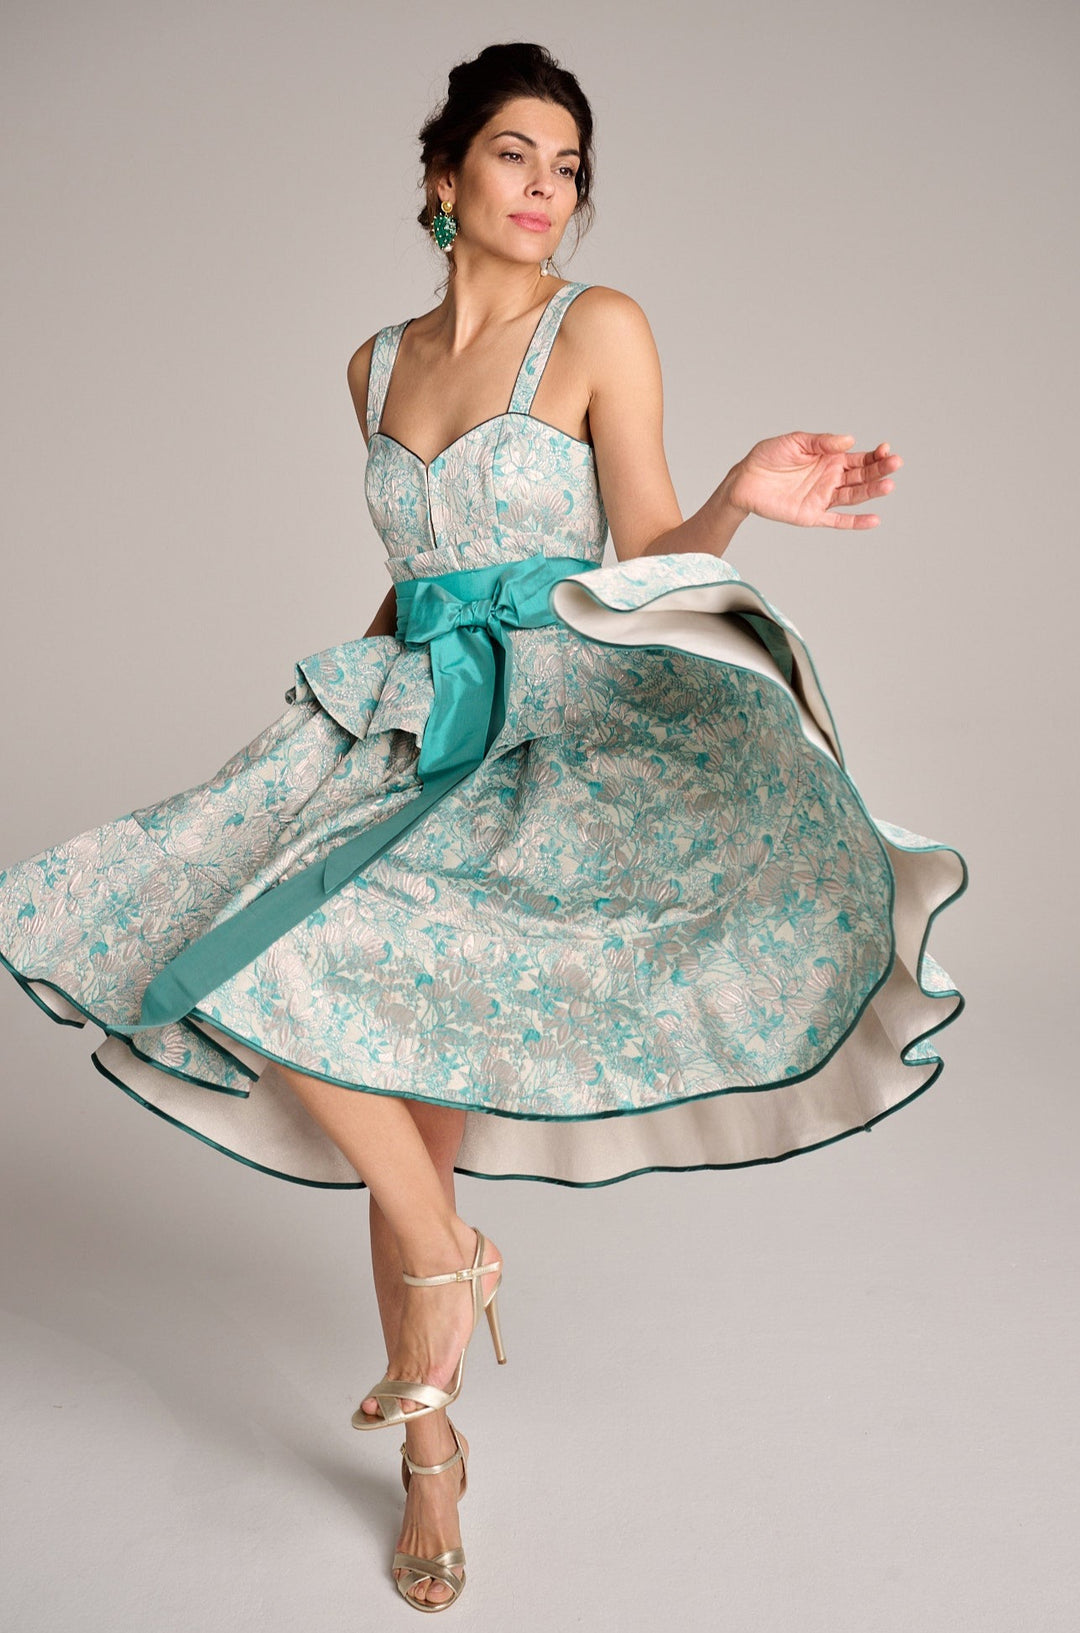 Ein folkloreartiges Dindl Kleid in Candyfarbenem Türkis von einer schönen Frau tänzerisch hochschwingend getragen. Das außergewöhnlich weibliche Dirndl hat keine Schürze und wird dank des herzförmigen Ausschnittes ohne Bluse gewählt 